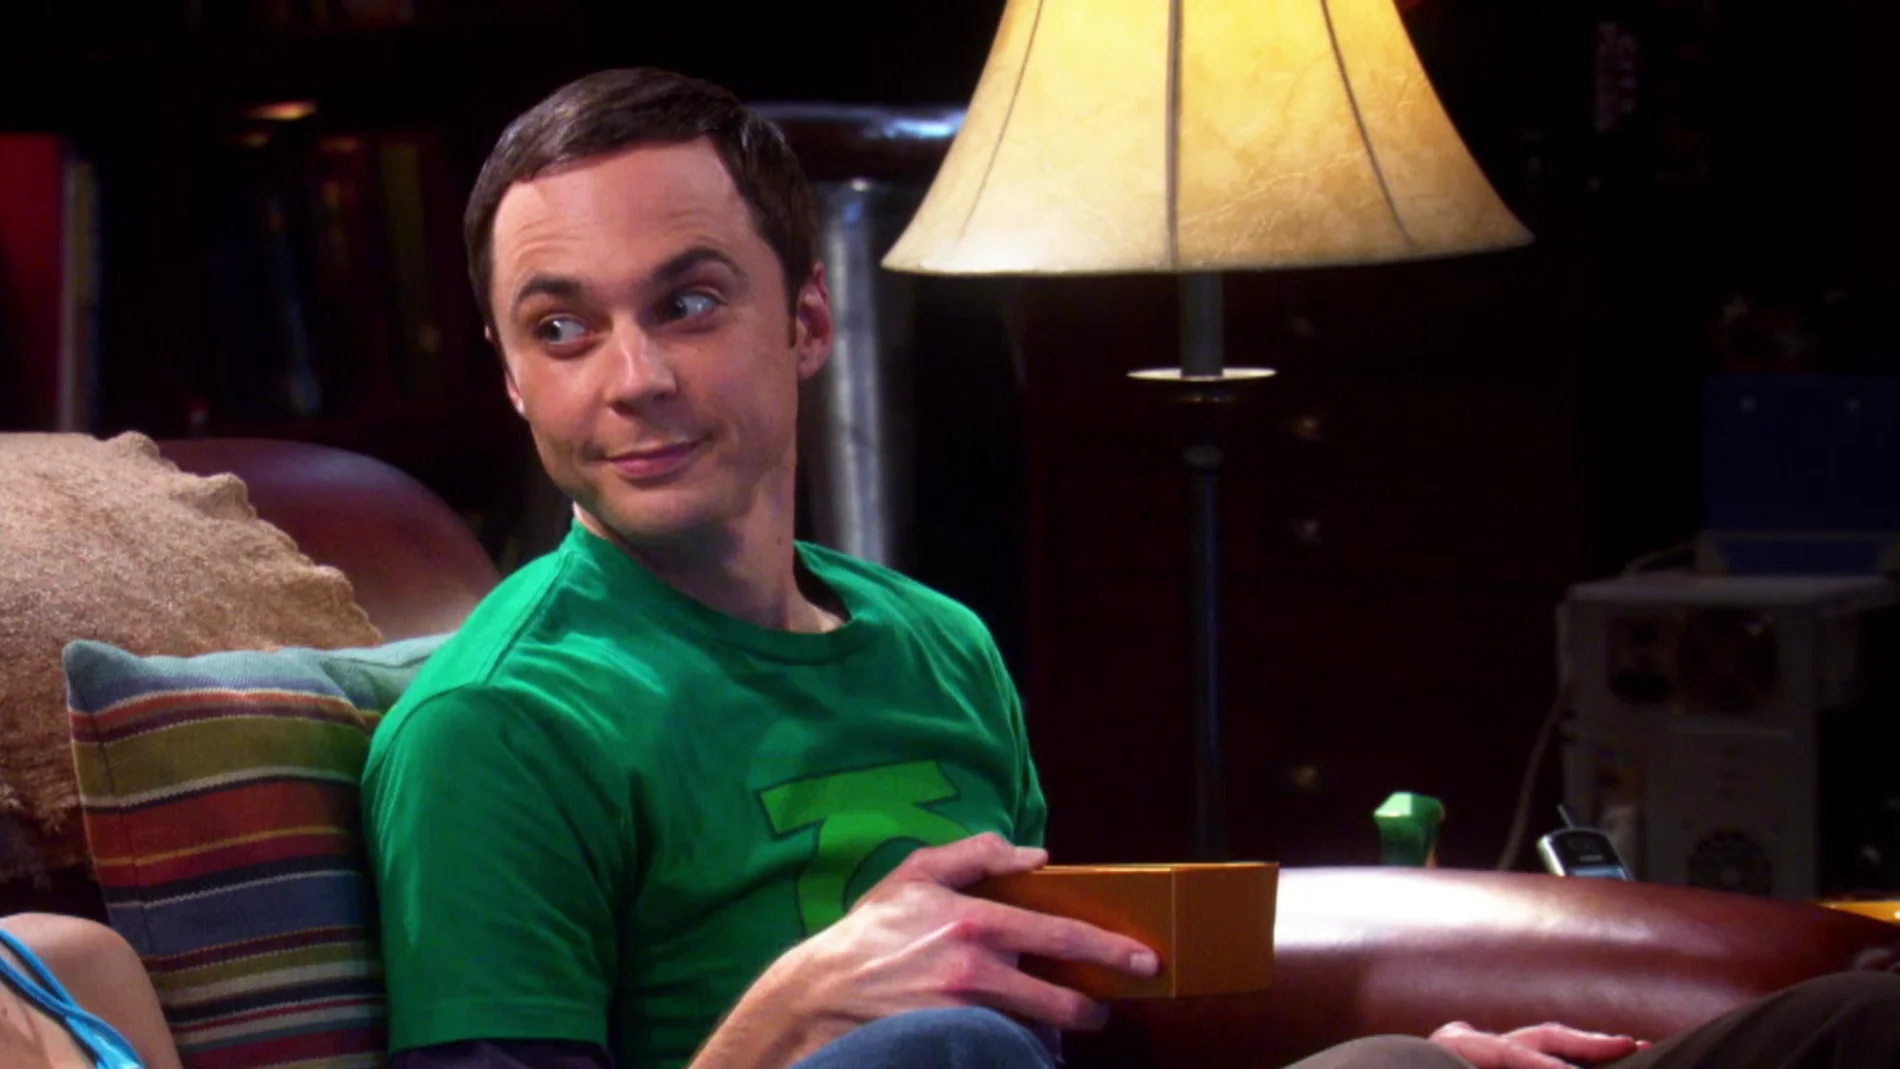 El momento en el que Sheldon utilizó bombones para reforzar positivamente a Penny